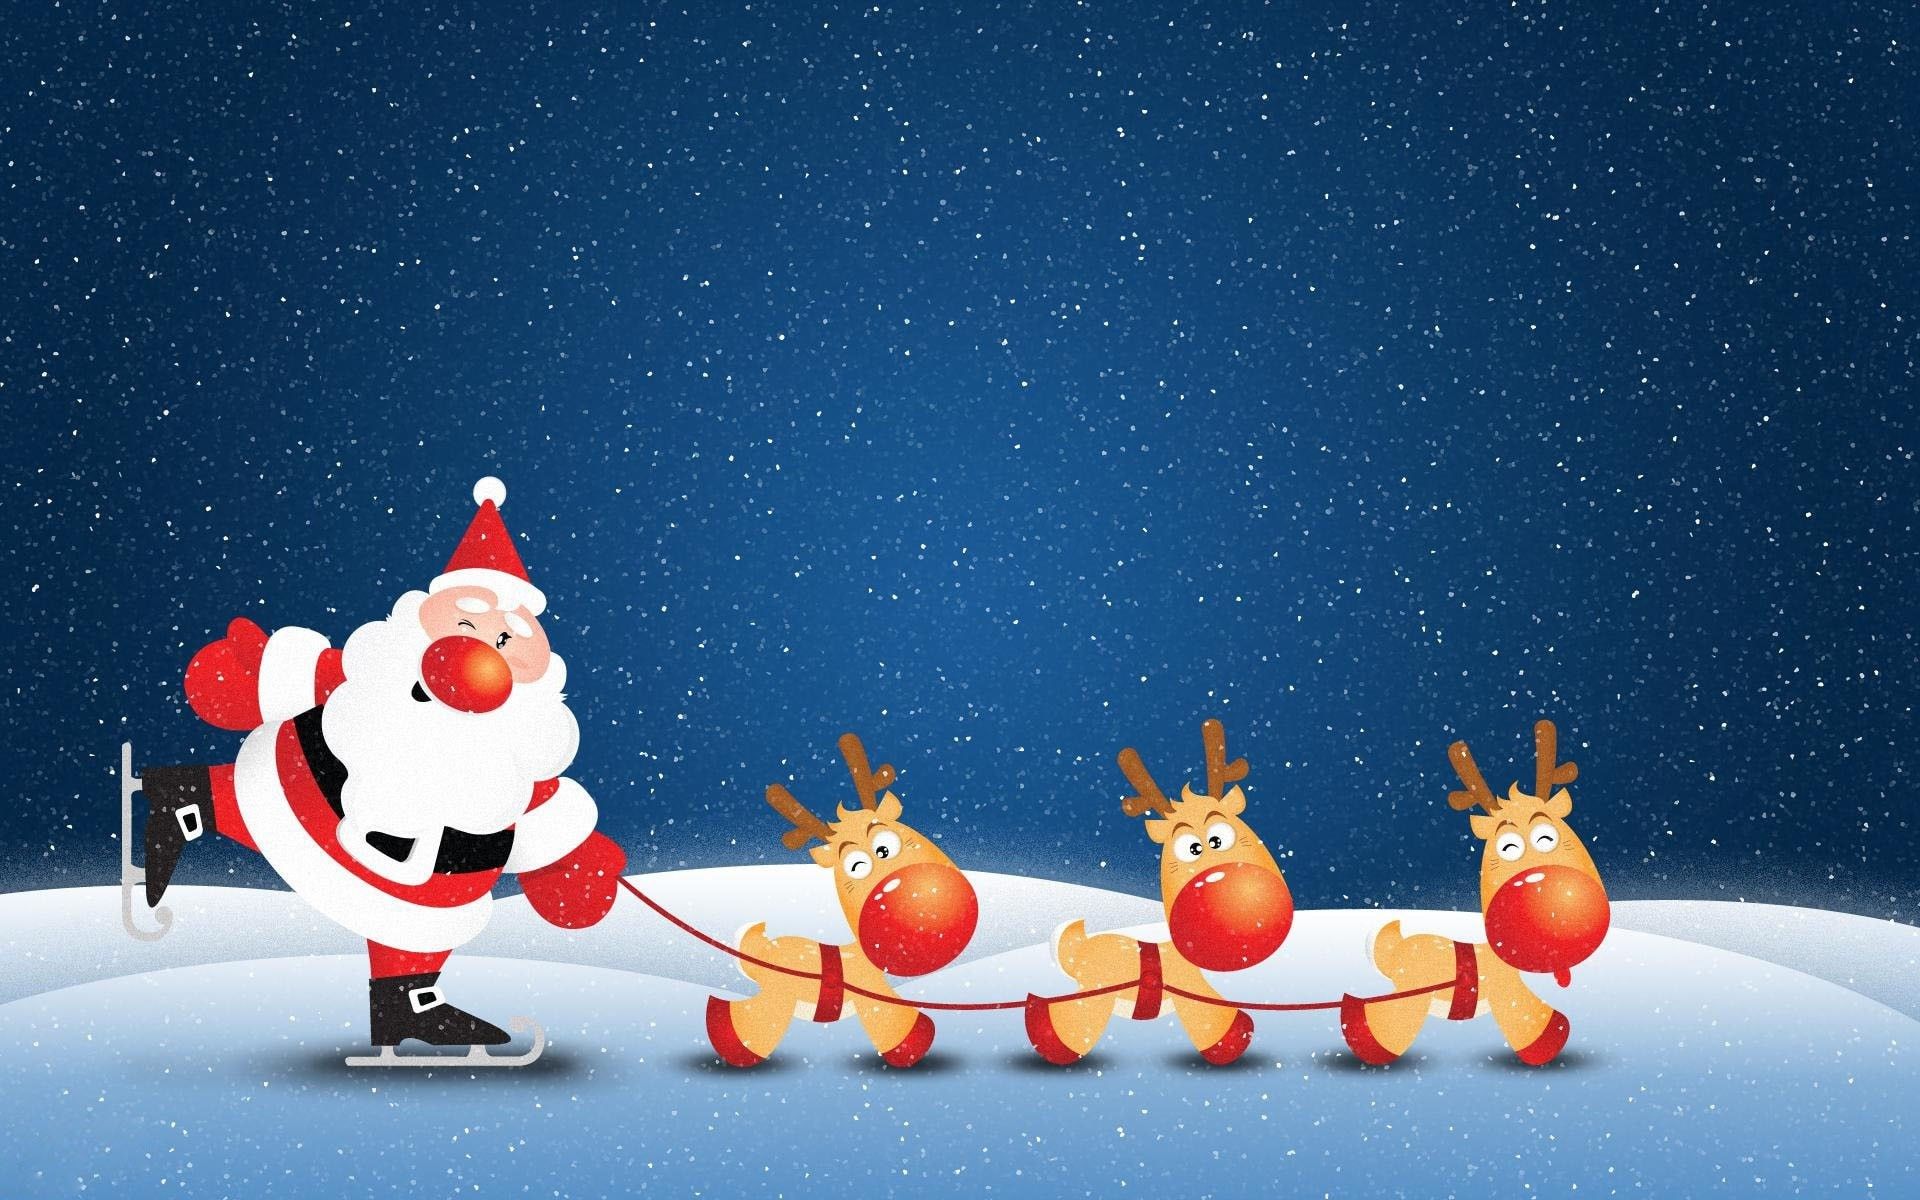 Animated Christmas Wallpaper for Desktop